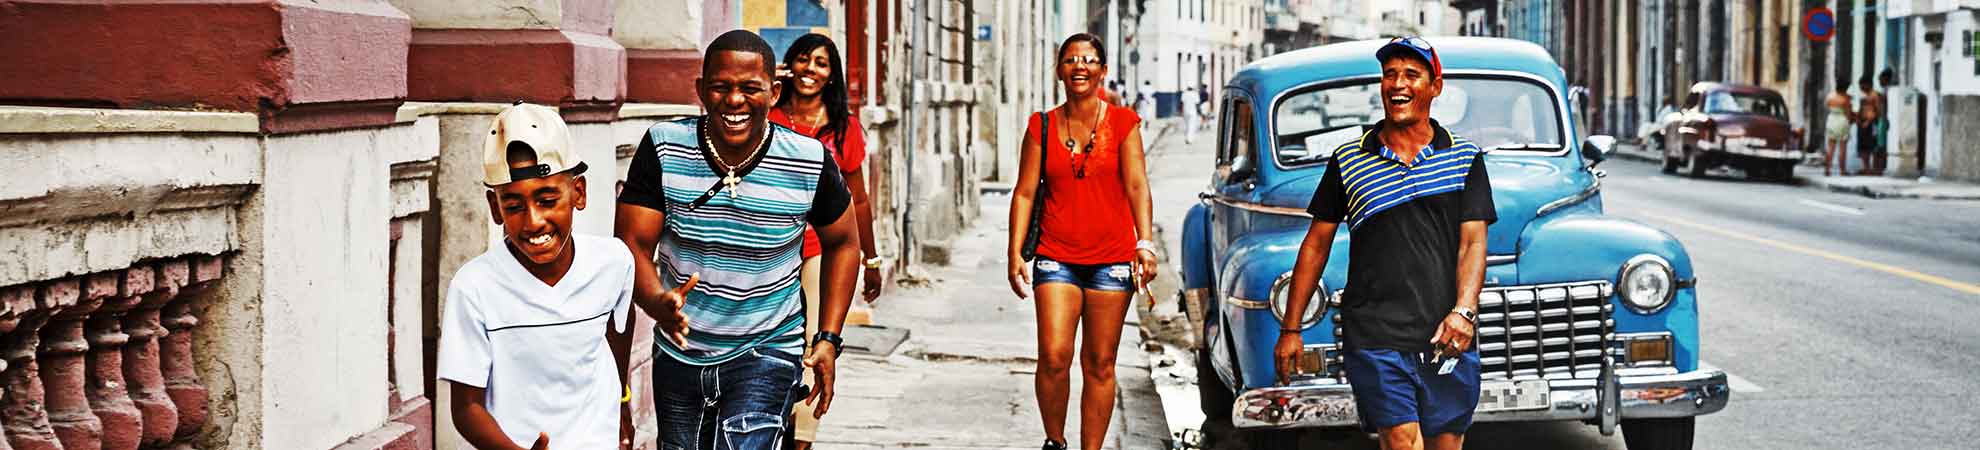 Langue parlée à Cuba - Se faire comprendre dans le pays